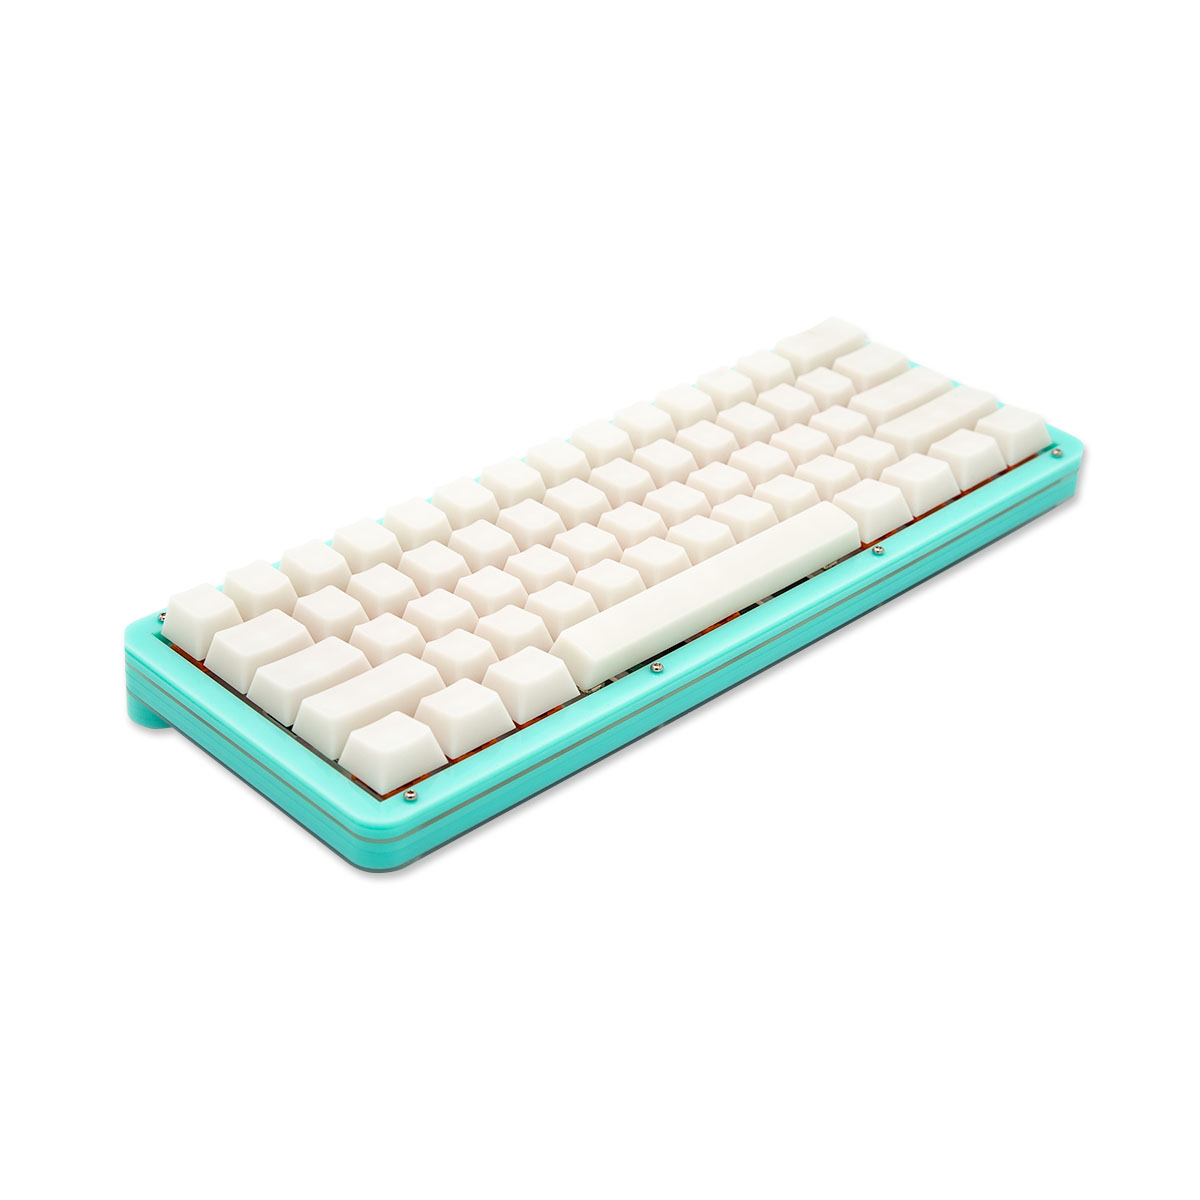 Level60 60% Acrylic Keyboard Kit » 1upkeyboards